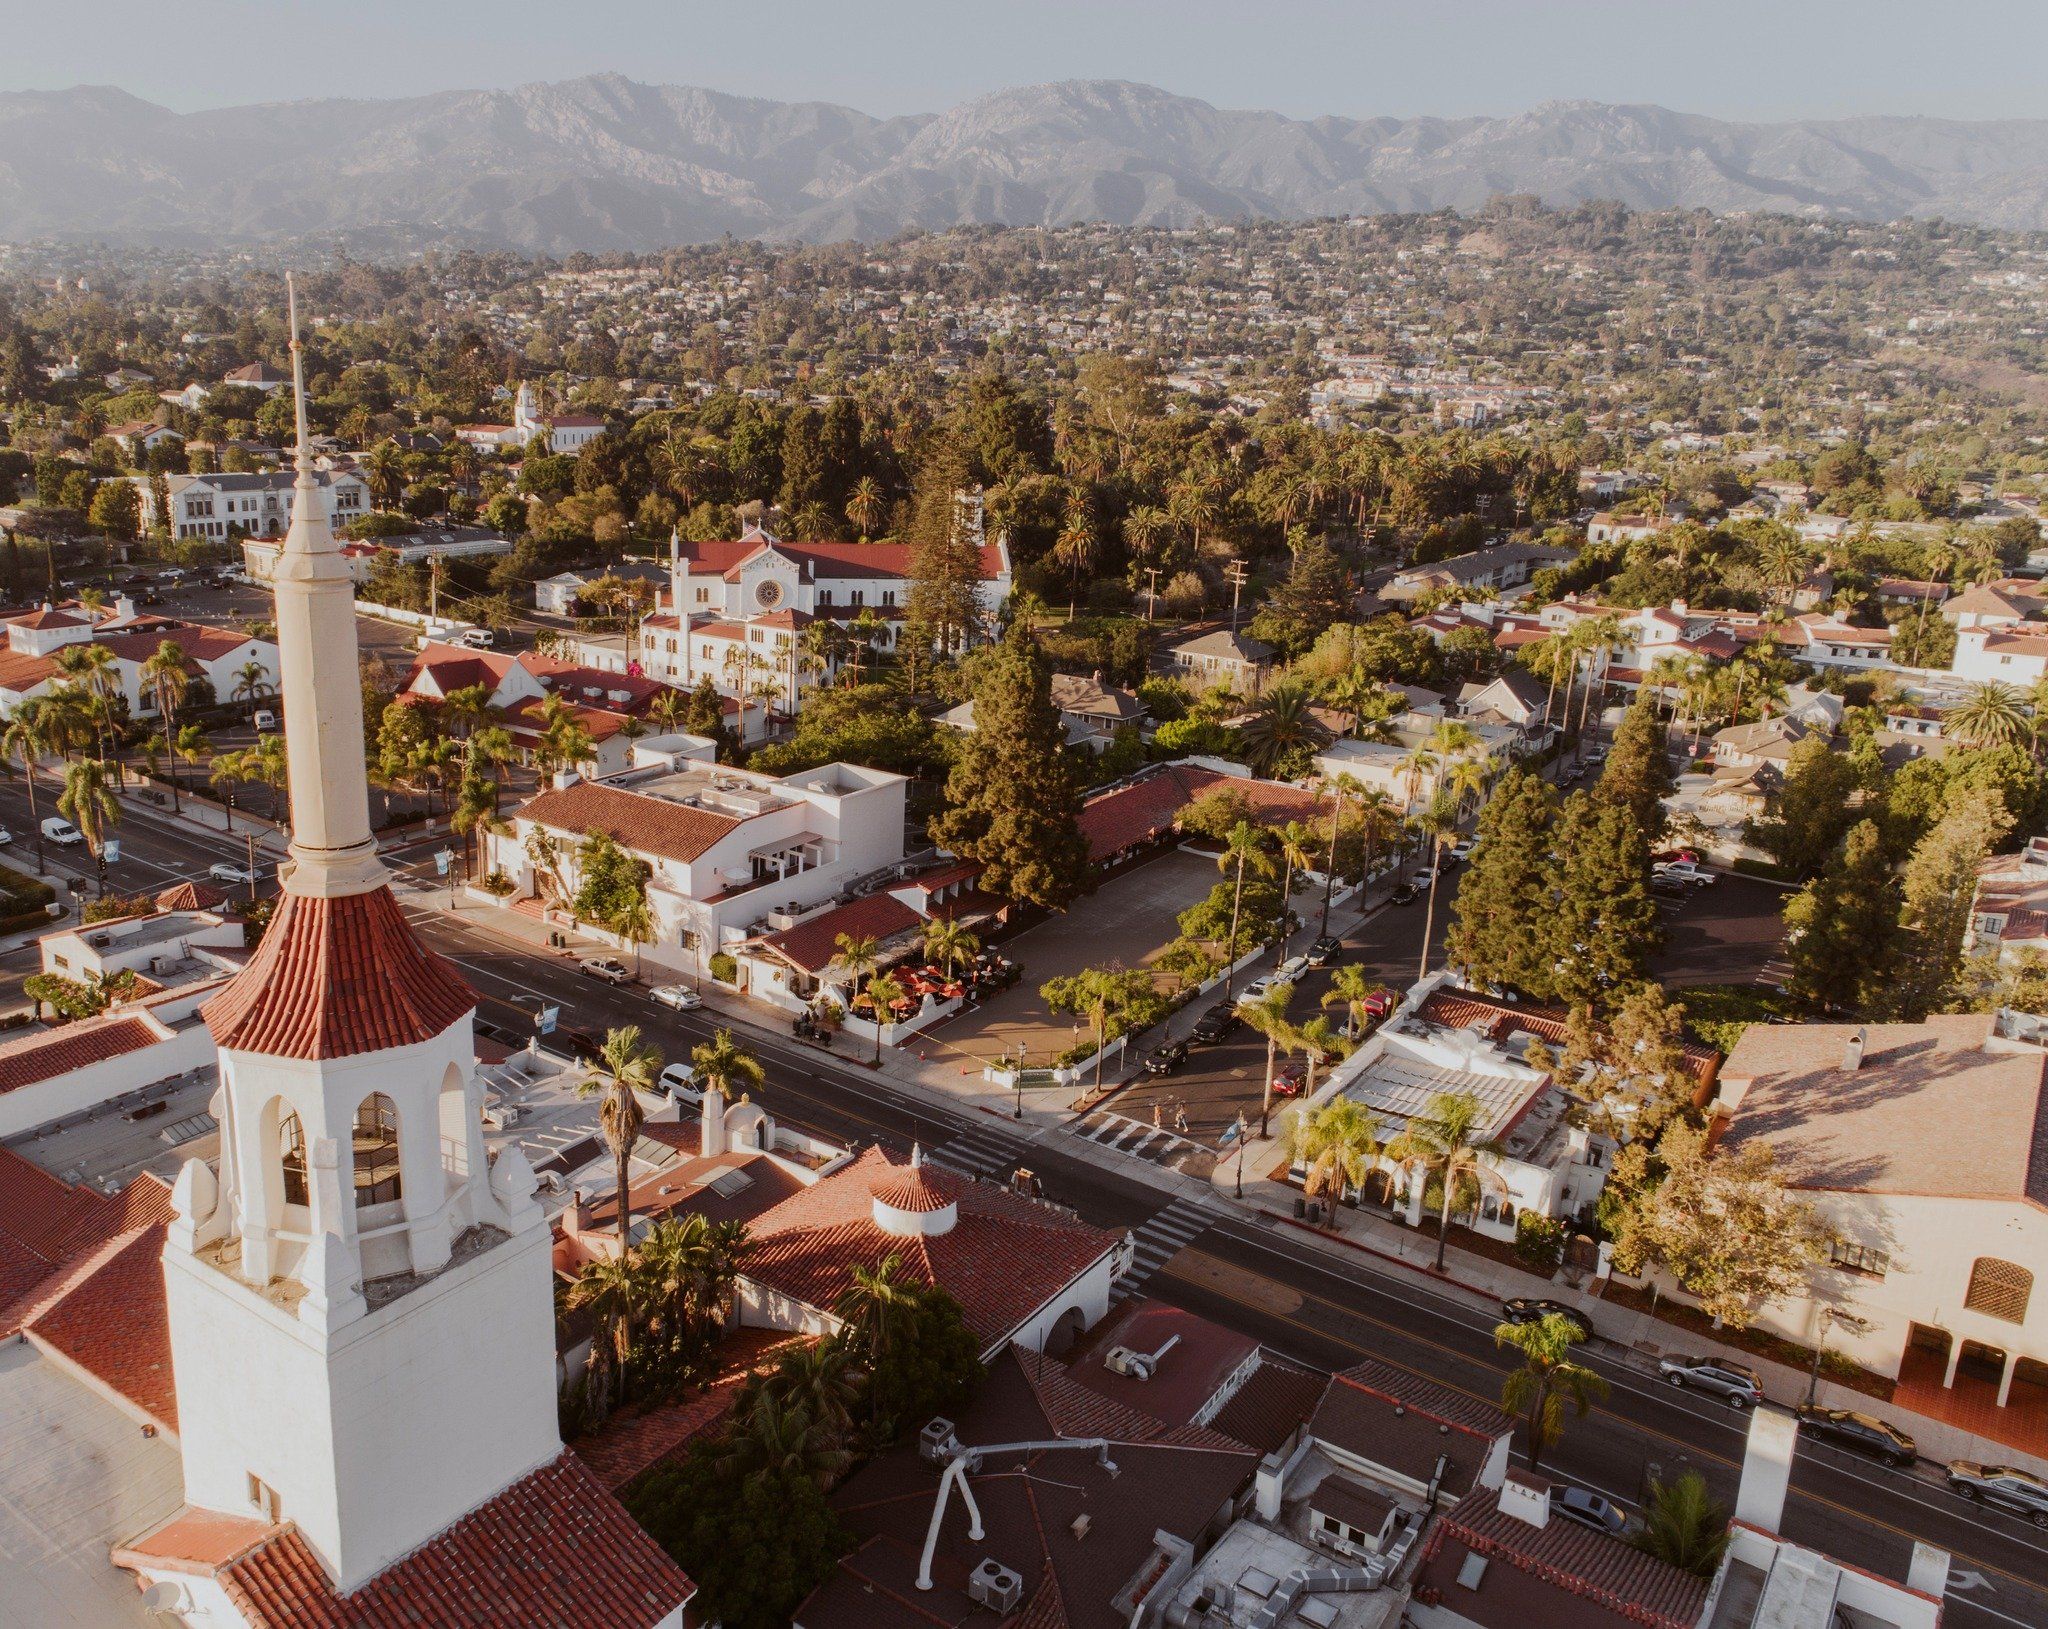 Aerial view of Santa Barbara, looking toward the mountains